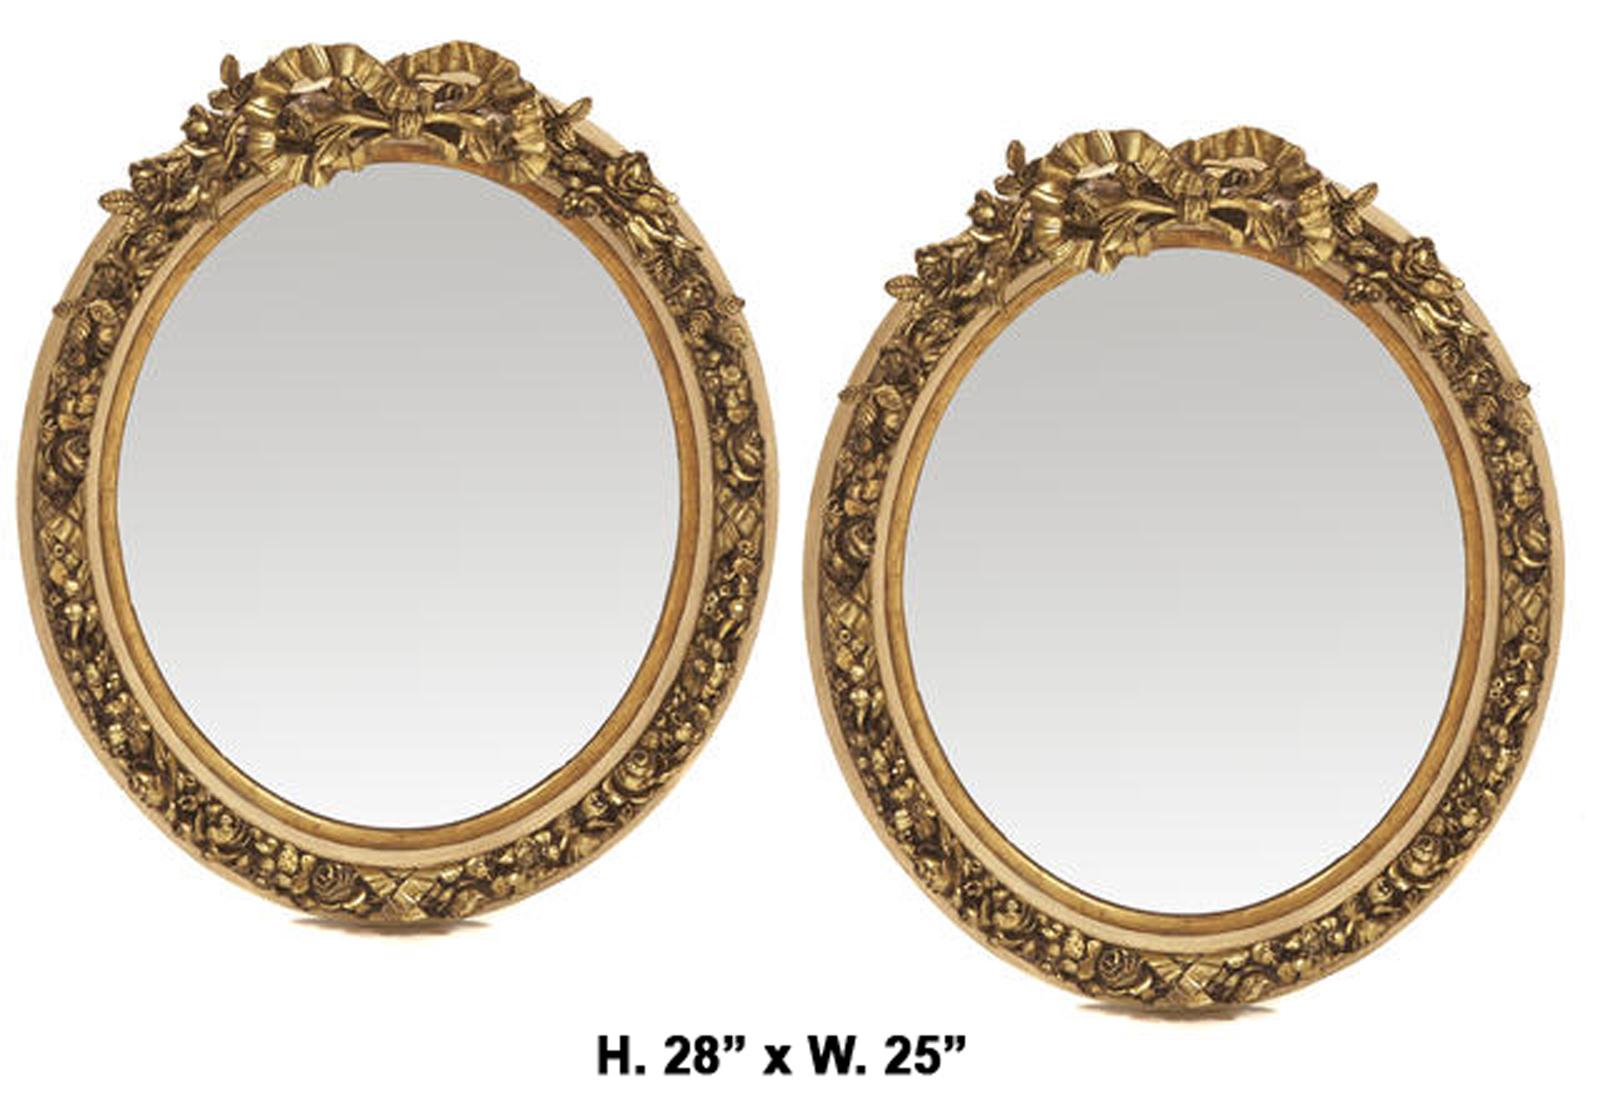 Paire de miroirs ovales dorés de style Louis XV français.
Milieu du 20e siècle. 

Les miroirs sont surmontés d'un ruban doré sculpté, chacun étant décoré d'un motif de fruits, de fleurs et de feuillages, le cadre festonné entourant une plaque de